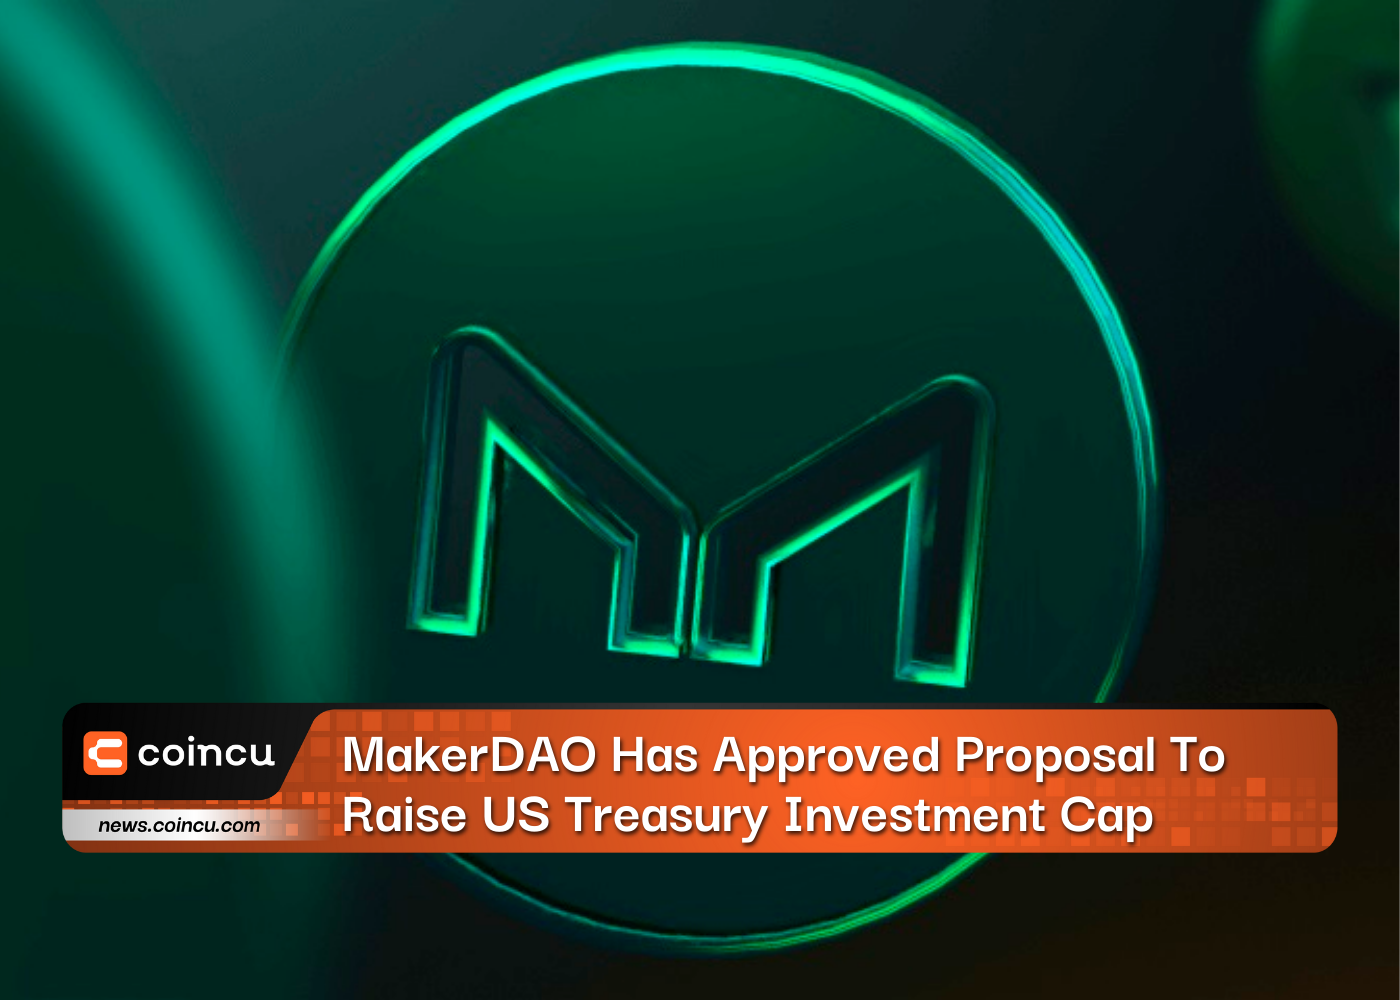 وافق MakerDAO على اقتراح لرفع سقف استثمار الخزانة الأمريكية